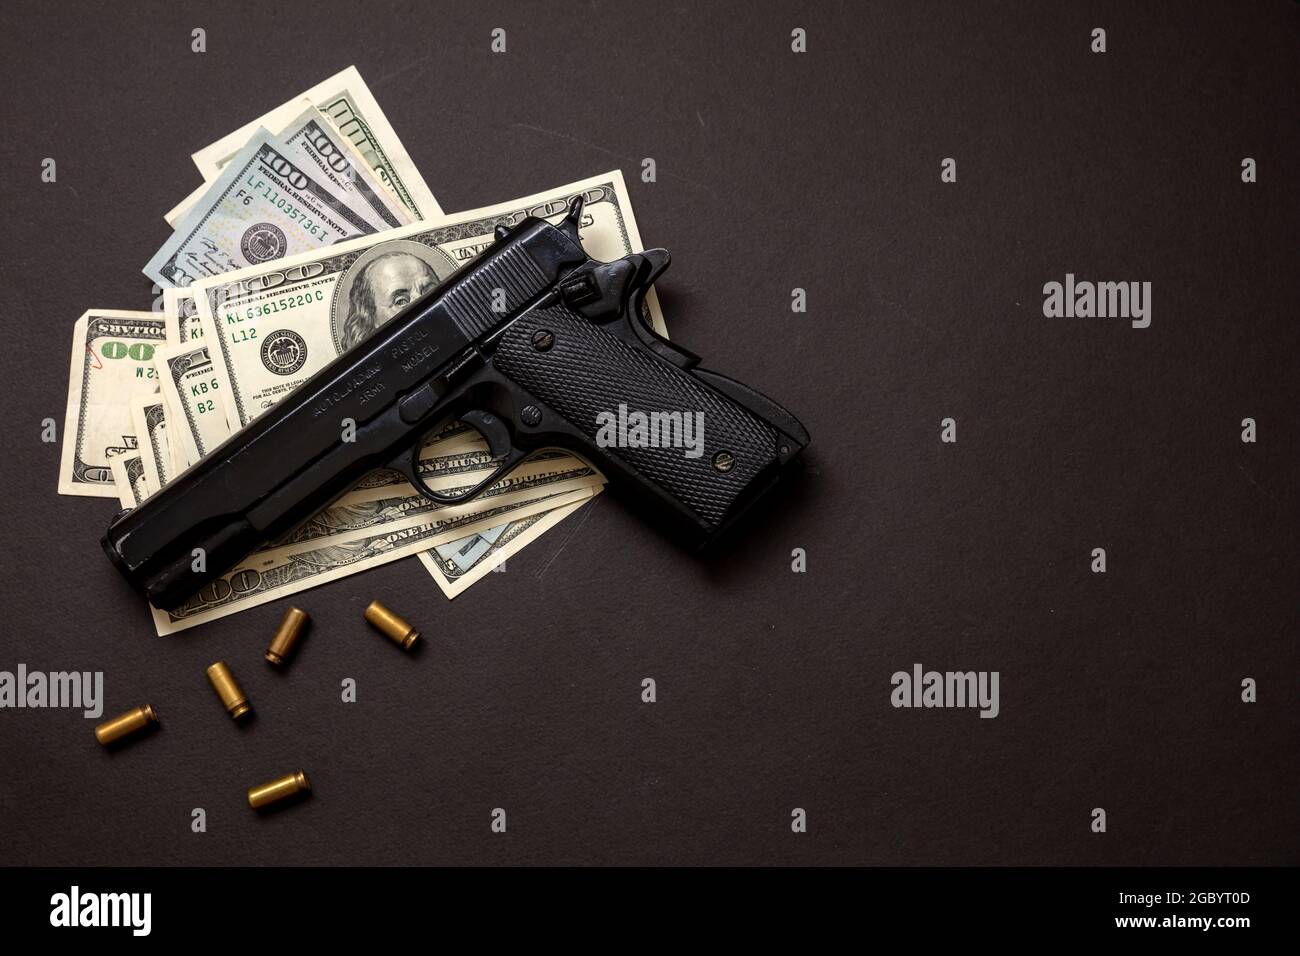 Criminalité, mafia et corruption, crime concept, pistolet à main 9 mm et billets en dollars américains sur fond noir. Banque D'Images